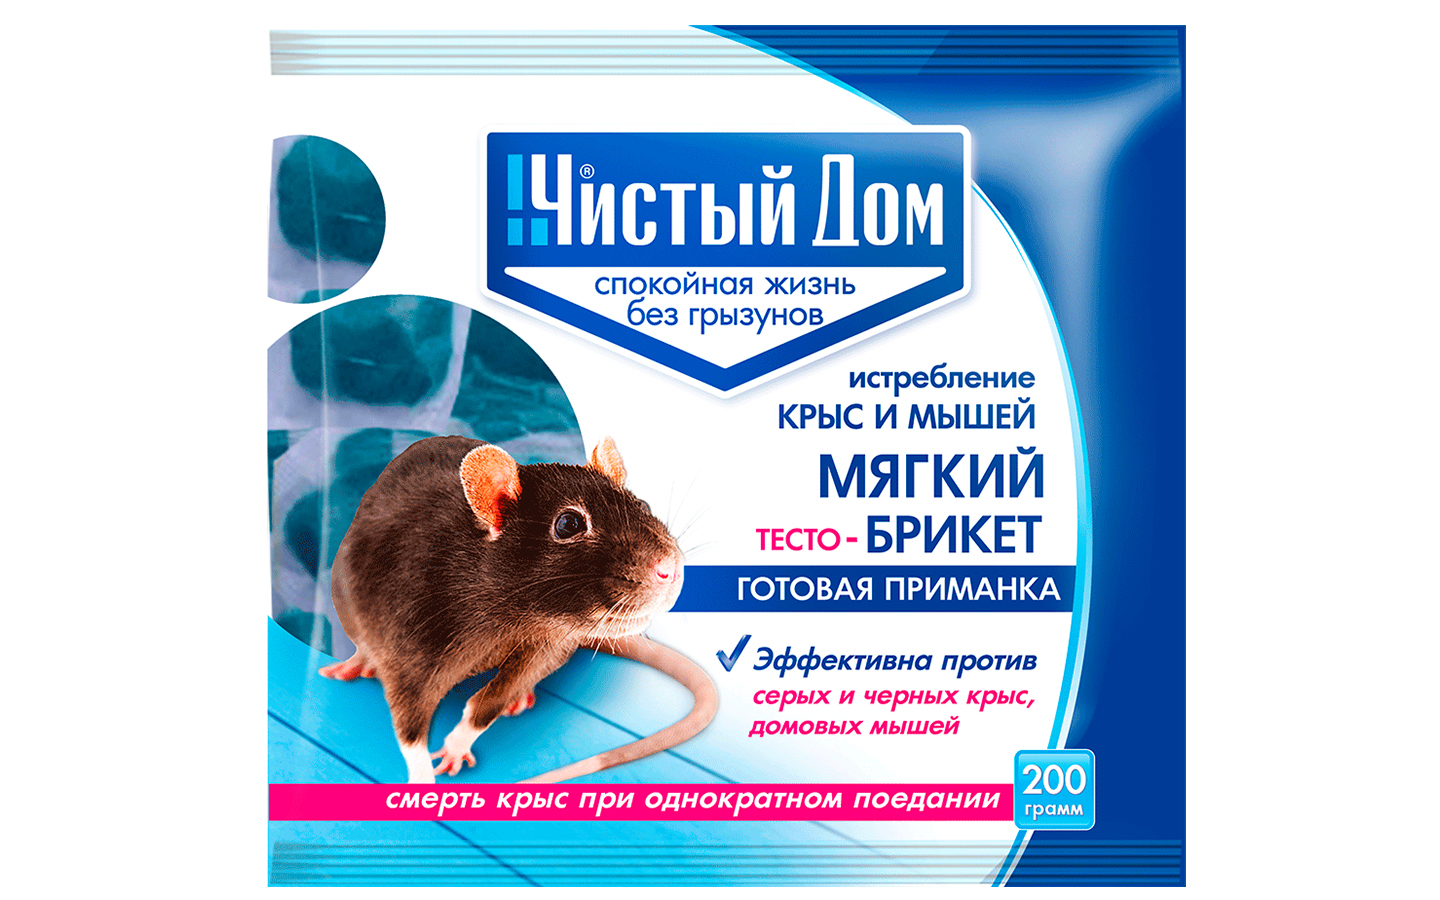 Мягкий брикет от крыс и мышей Чистый Дом, 200 гр, 03-054 заказать оптом .